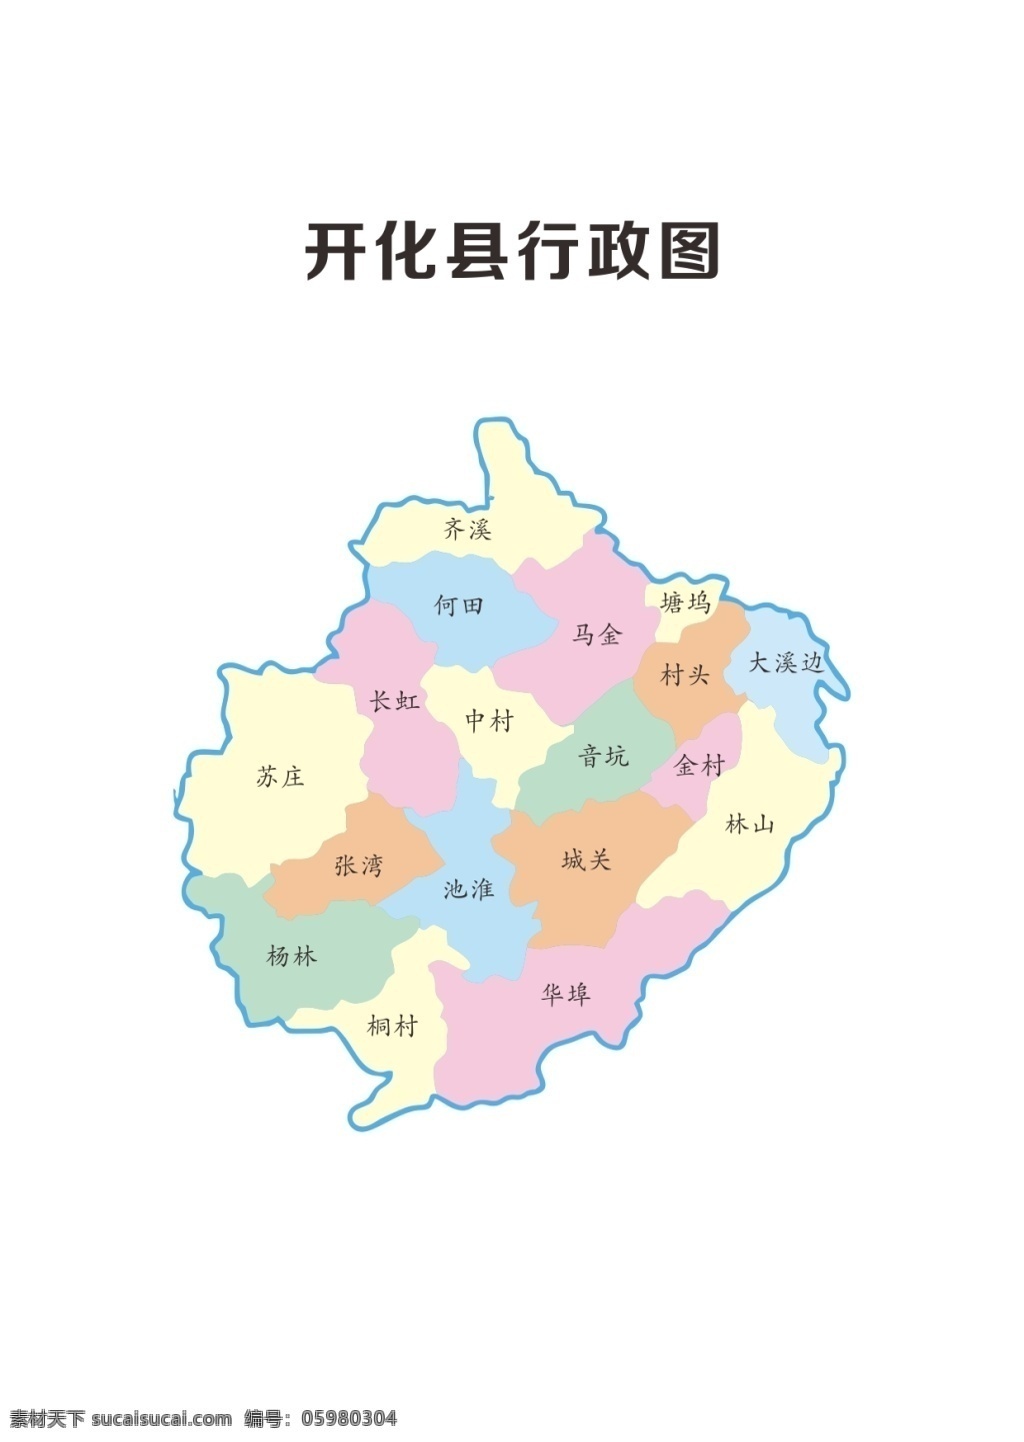 开化县 行政 矢量图 开化 行政图 开化行政图 行政矢量图 地图 白色